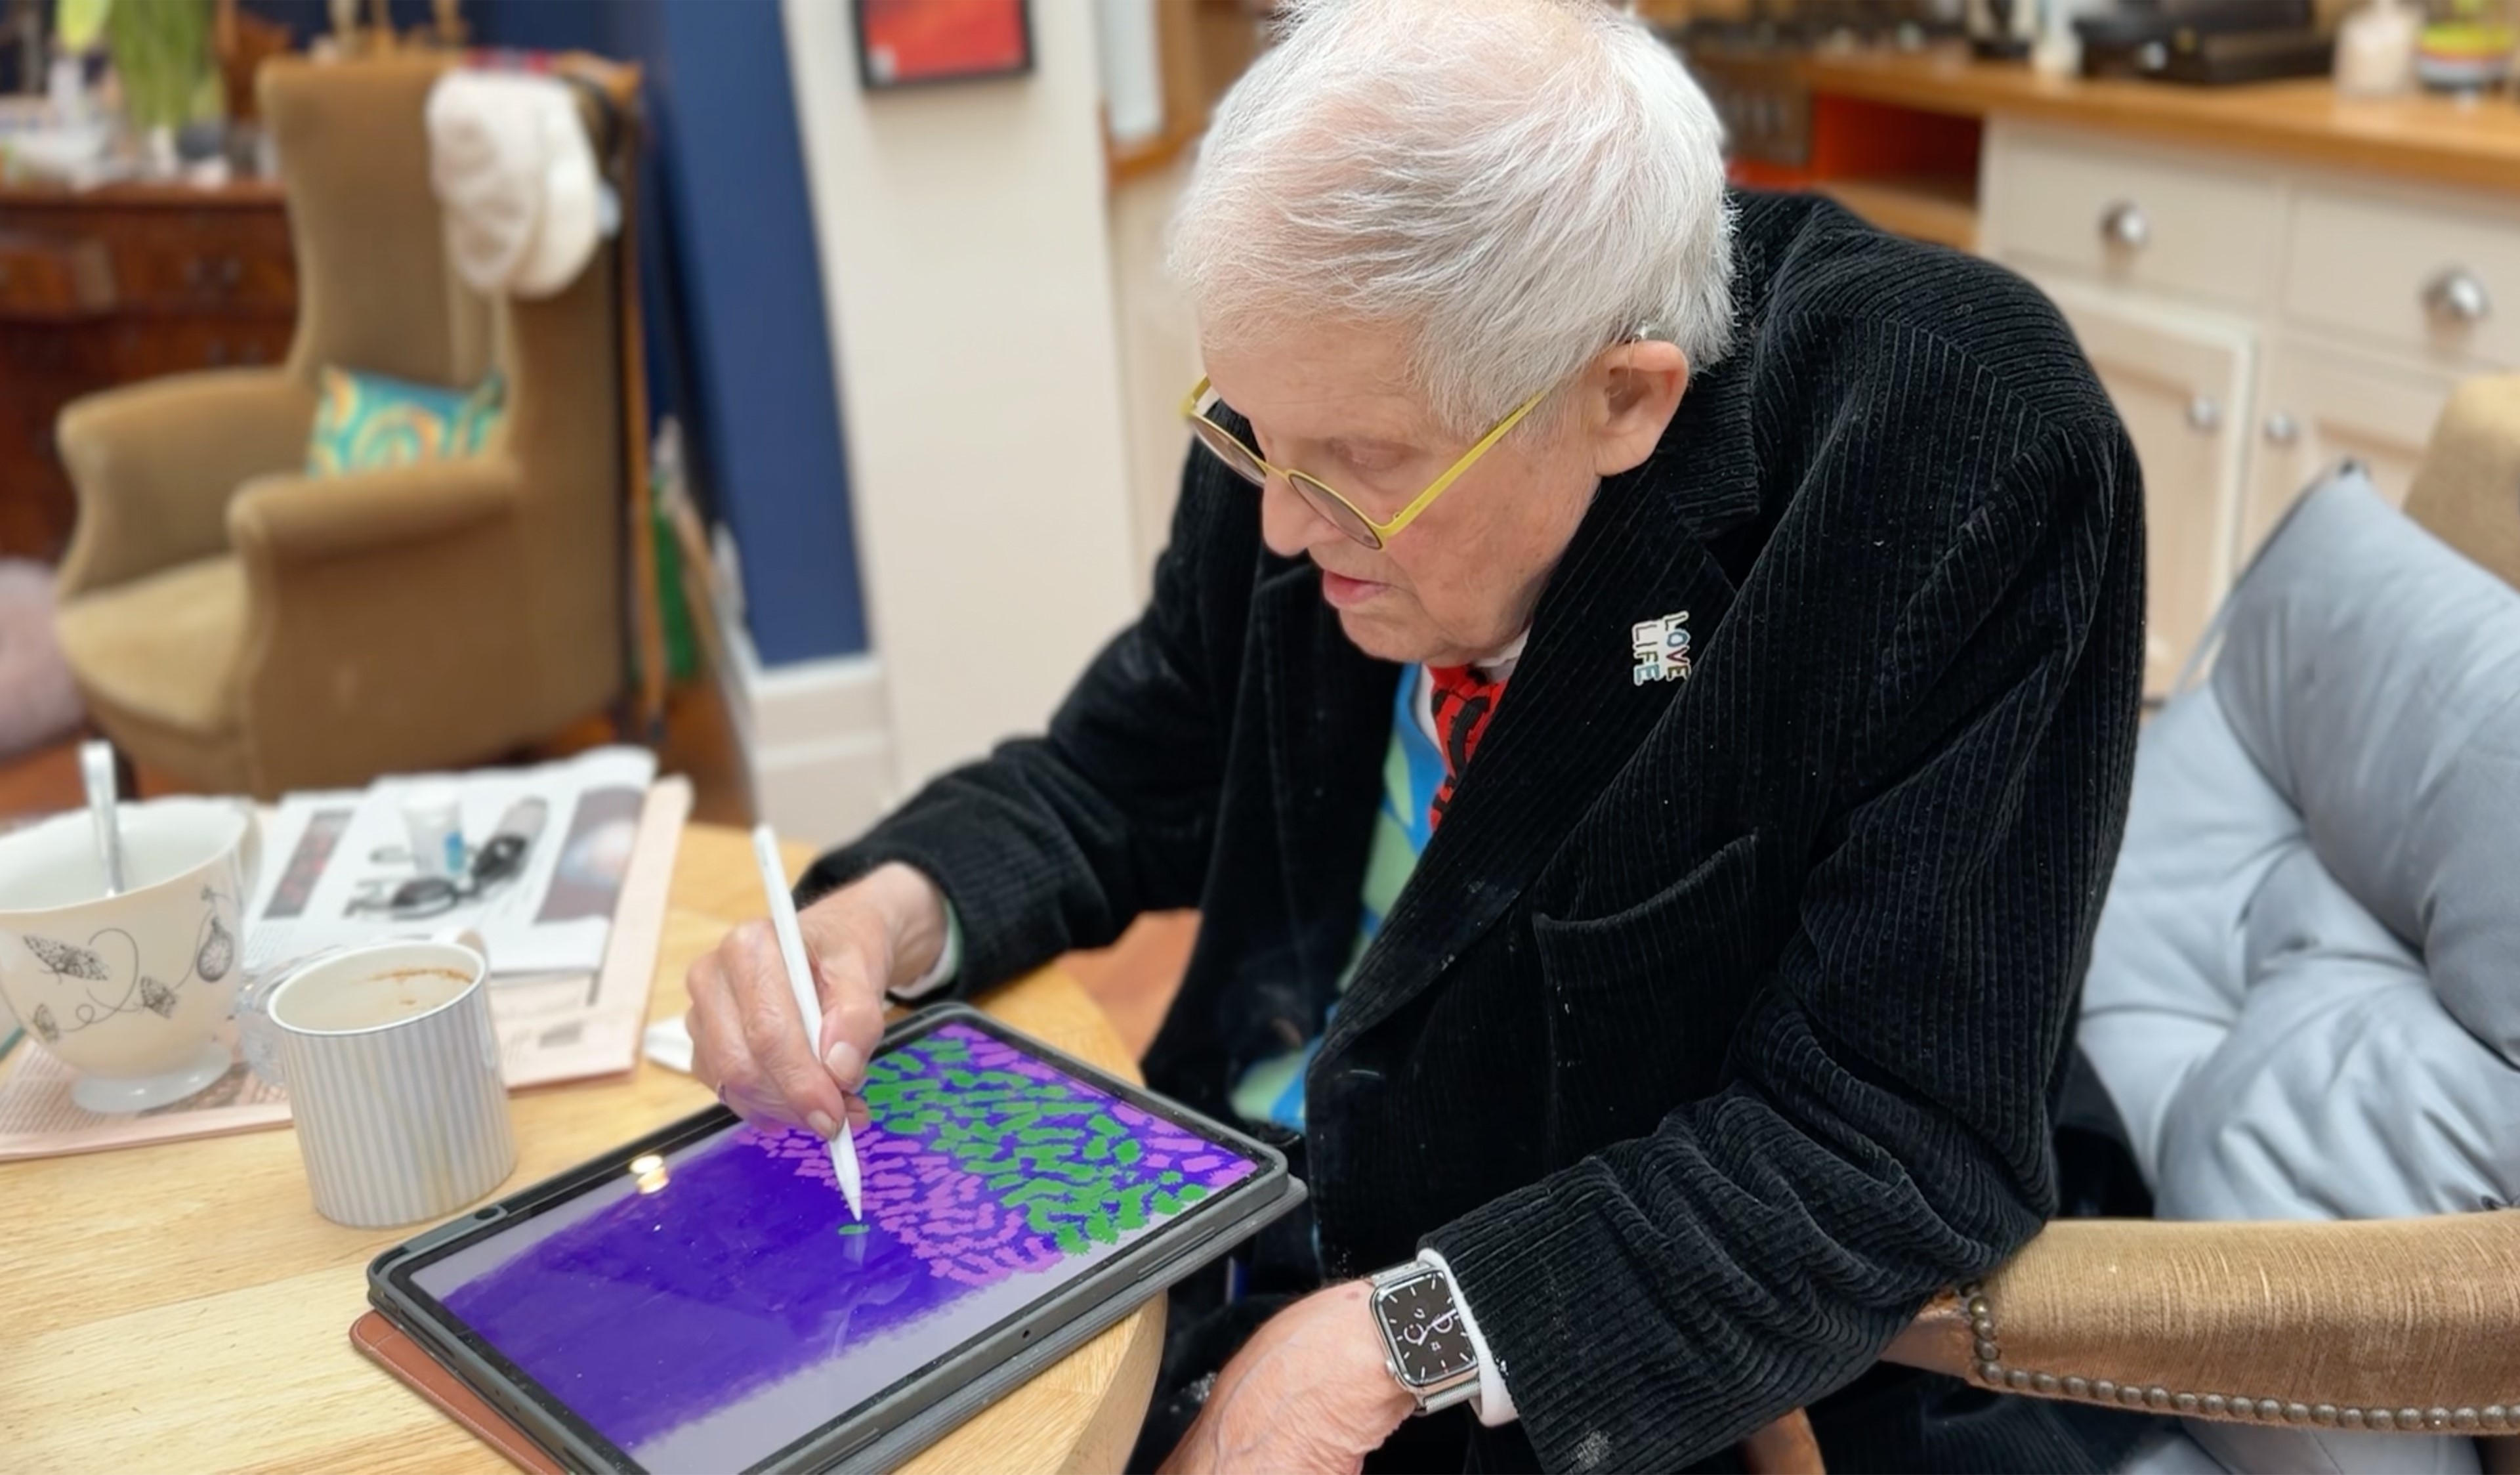 David Hockney uses iPad to create artwork